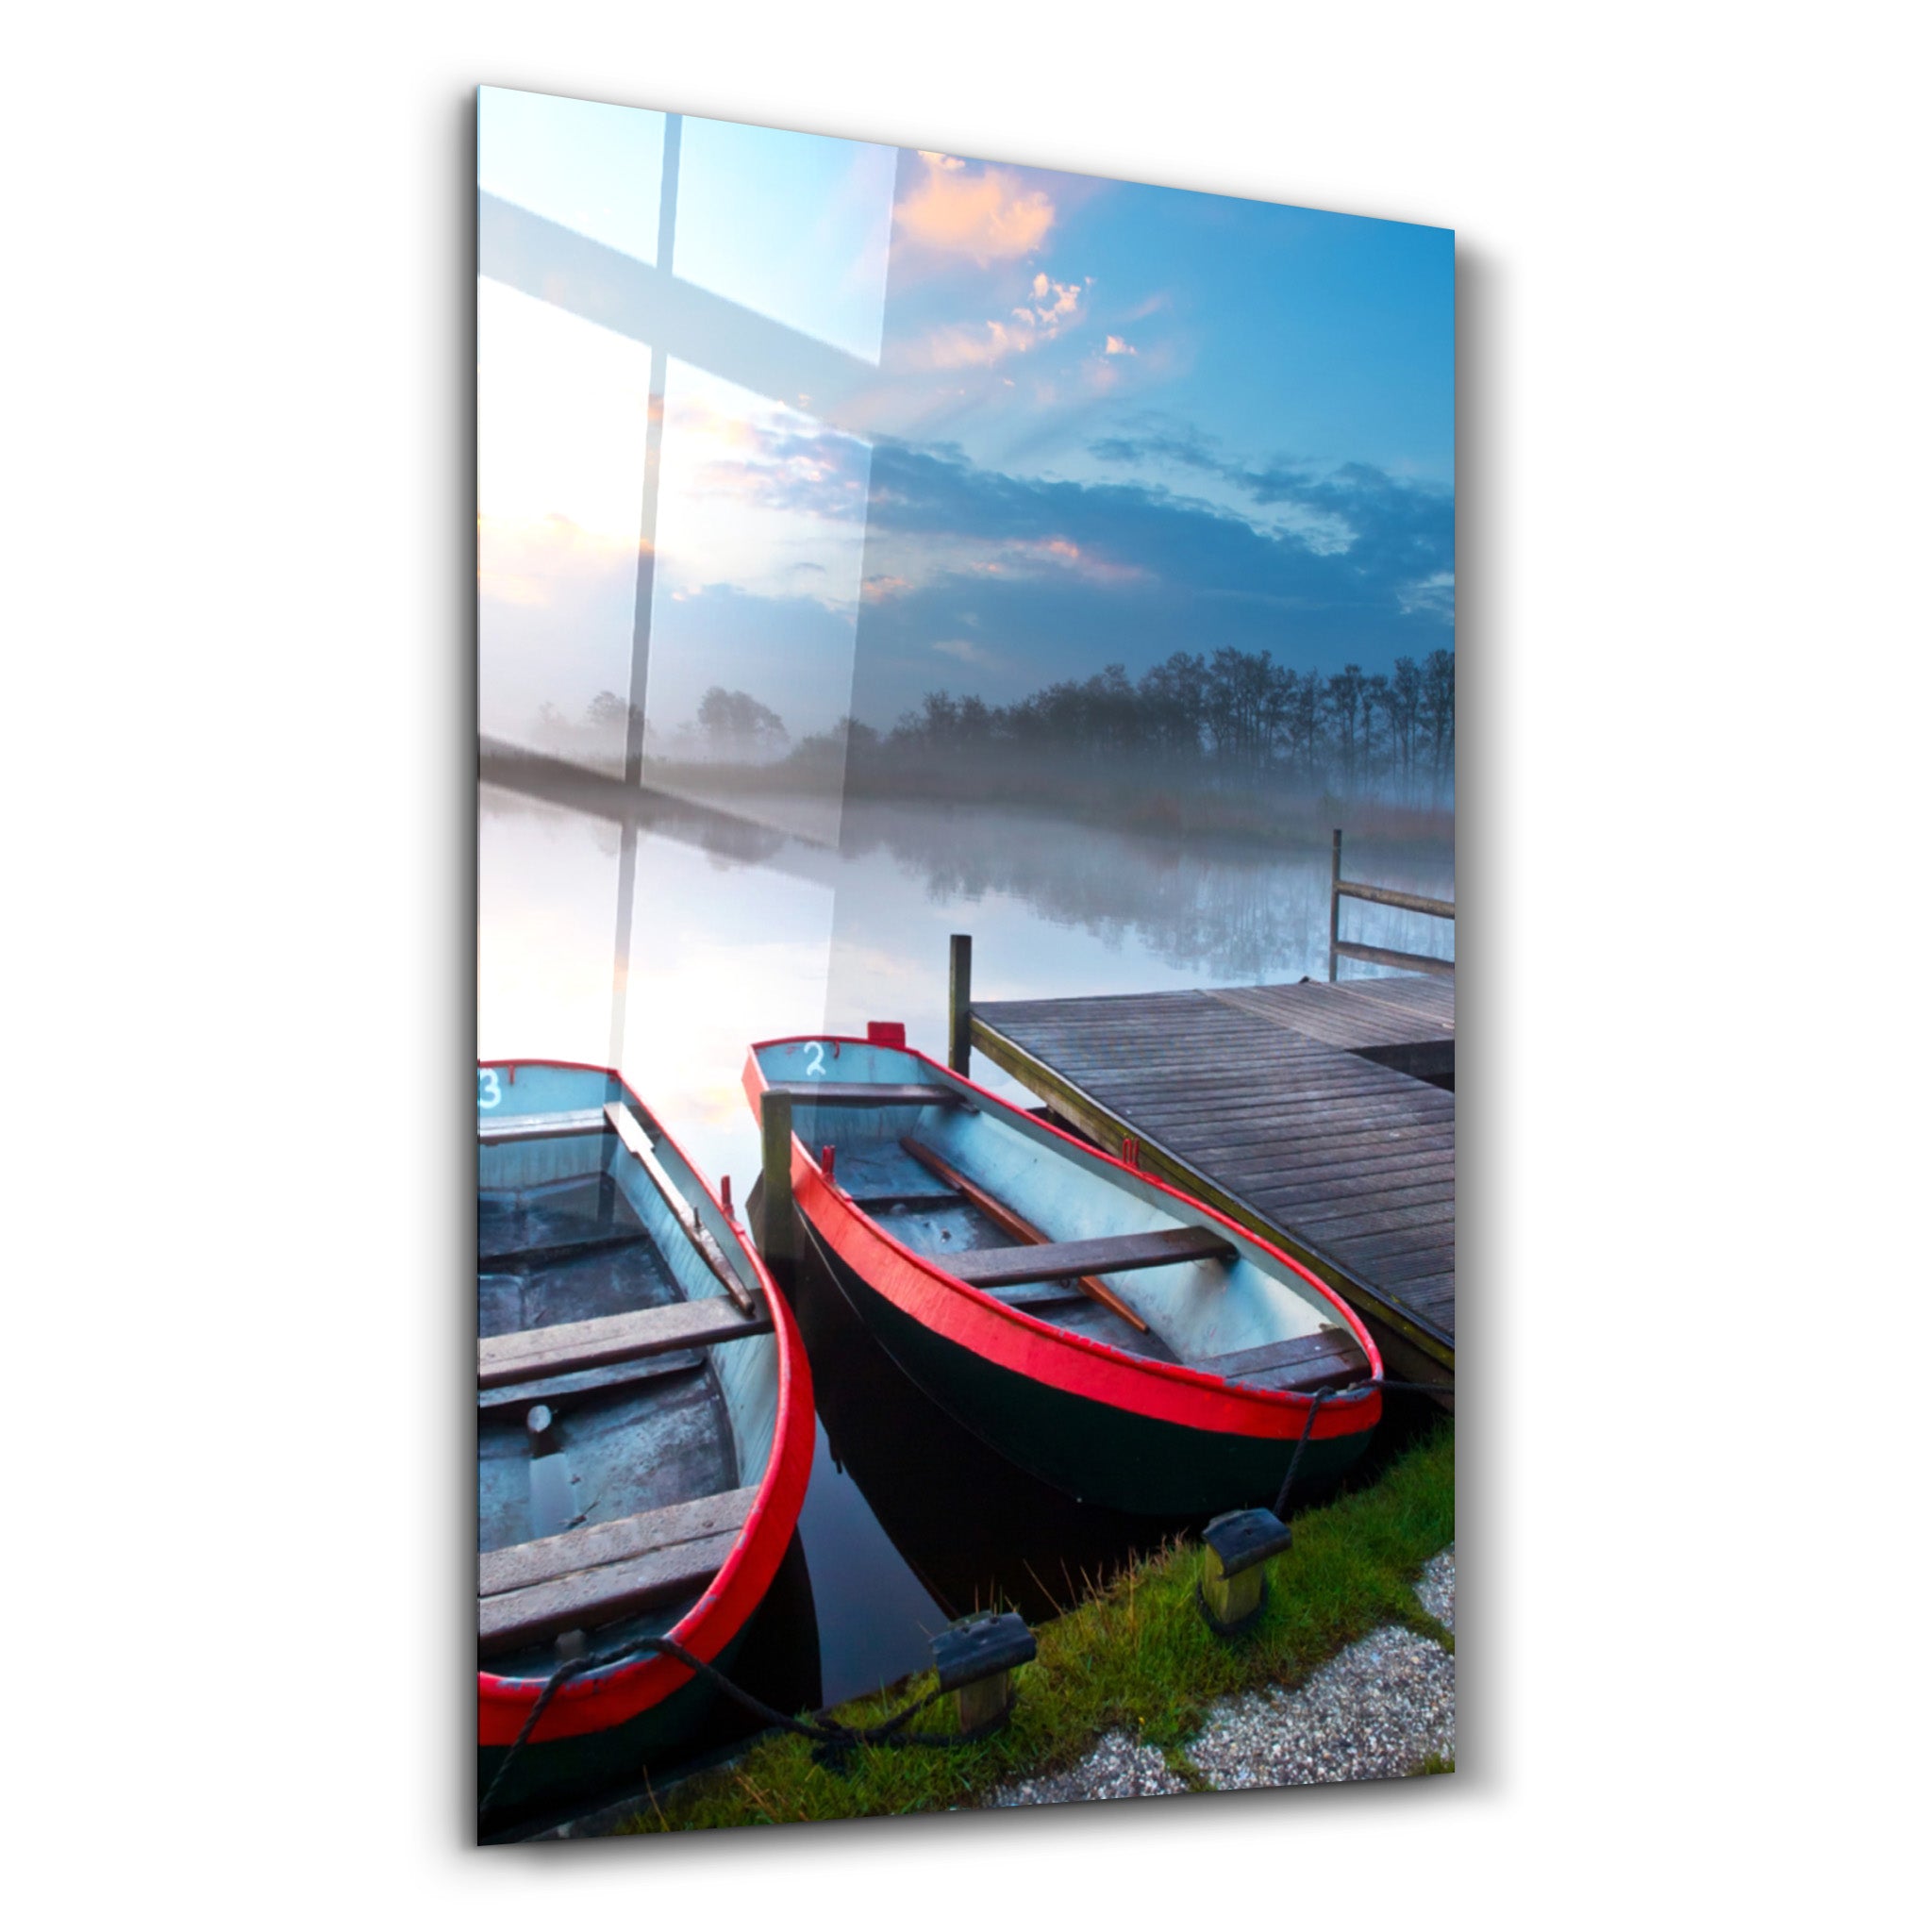 ・"Lake and Boat Landscape"・Glass Wall Art - ArtDesigna Glass Printing Wall Art